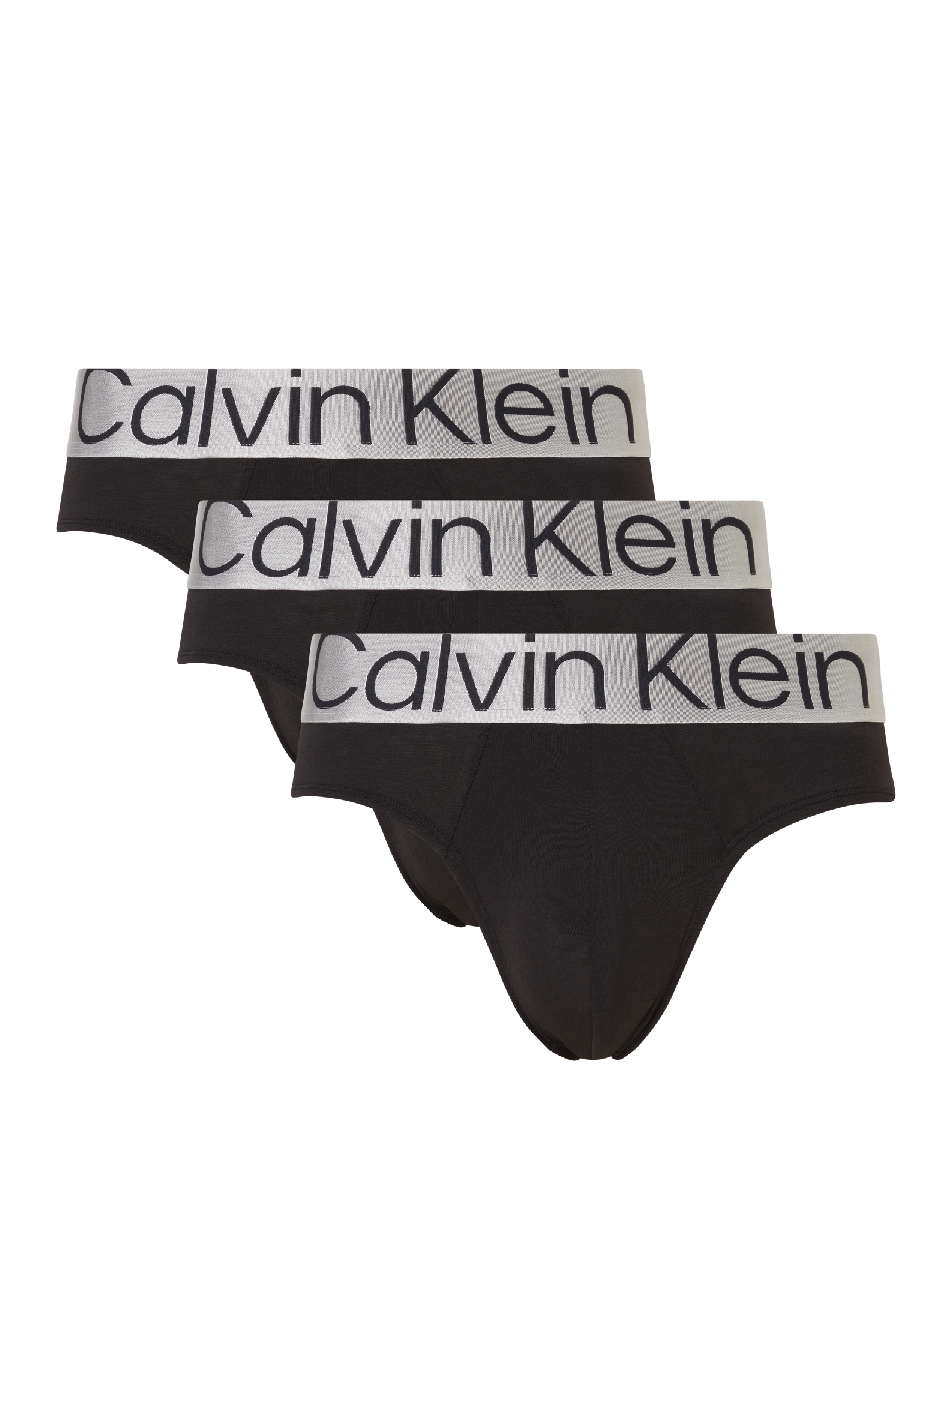 Calvin Klein 3 Pack Men's Reconsidered Steel Hip Brief